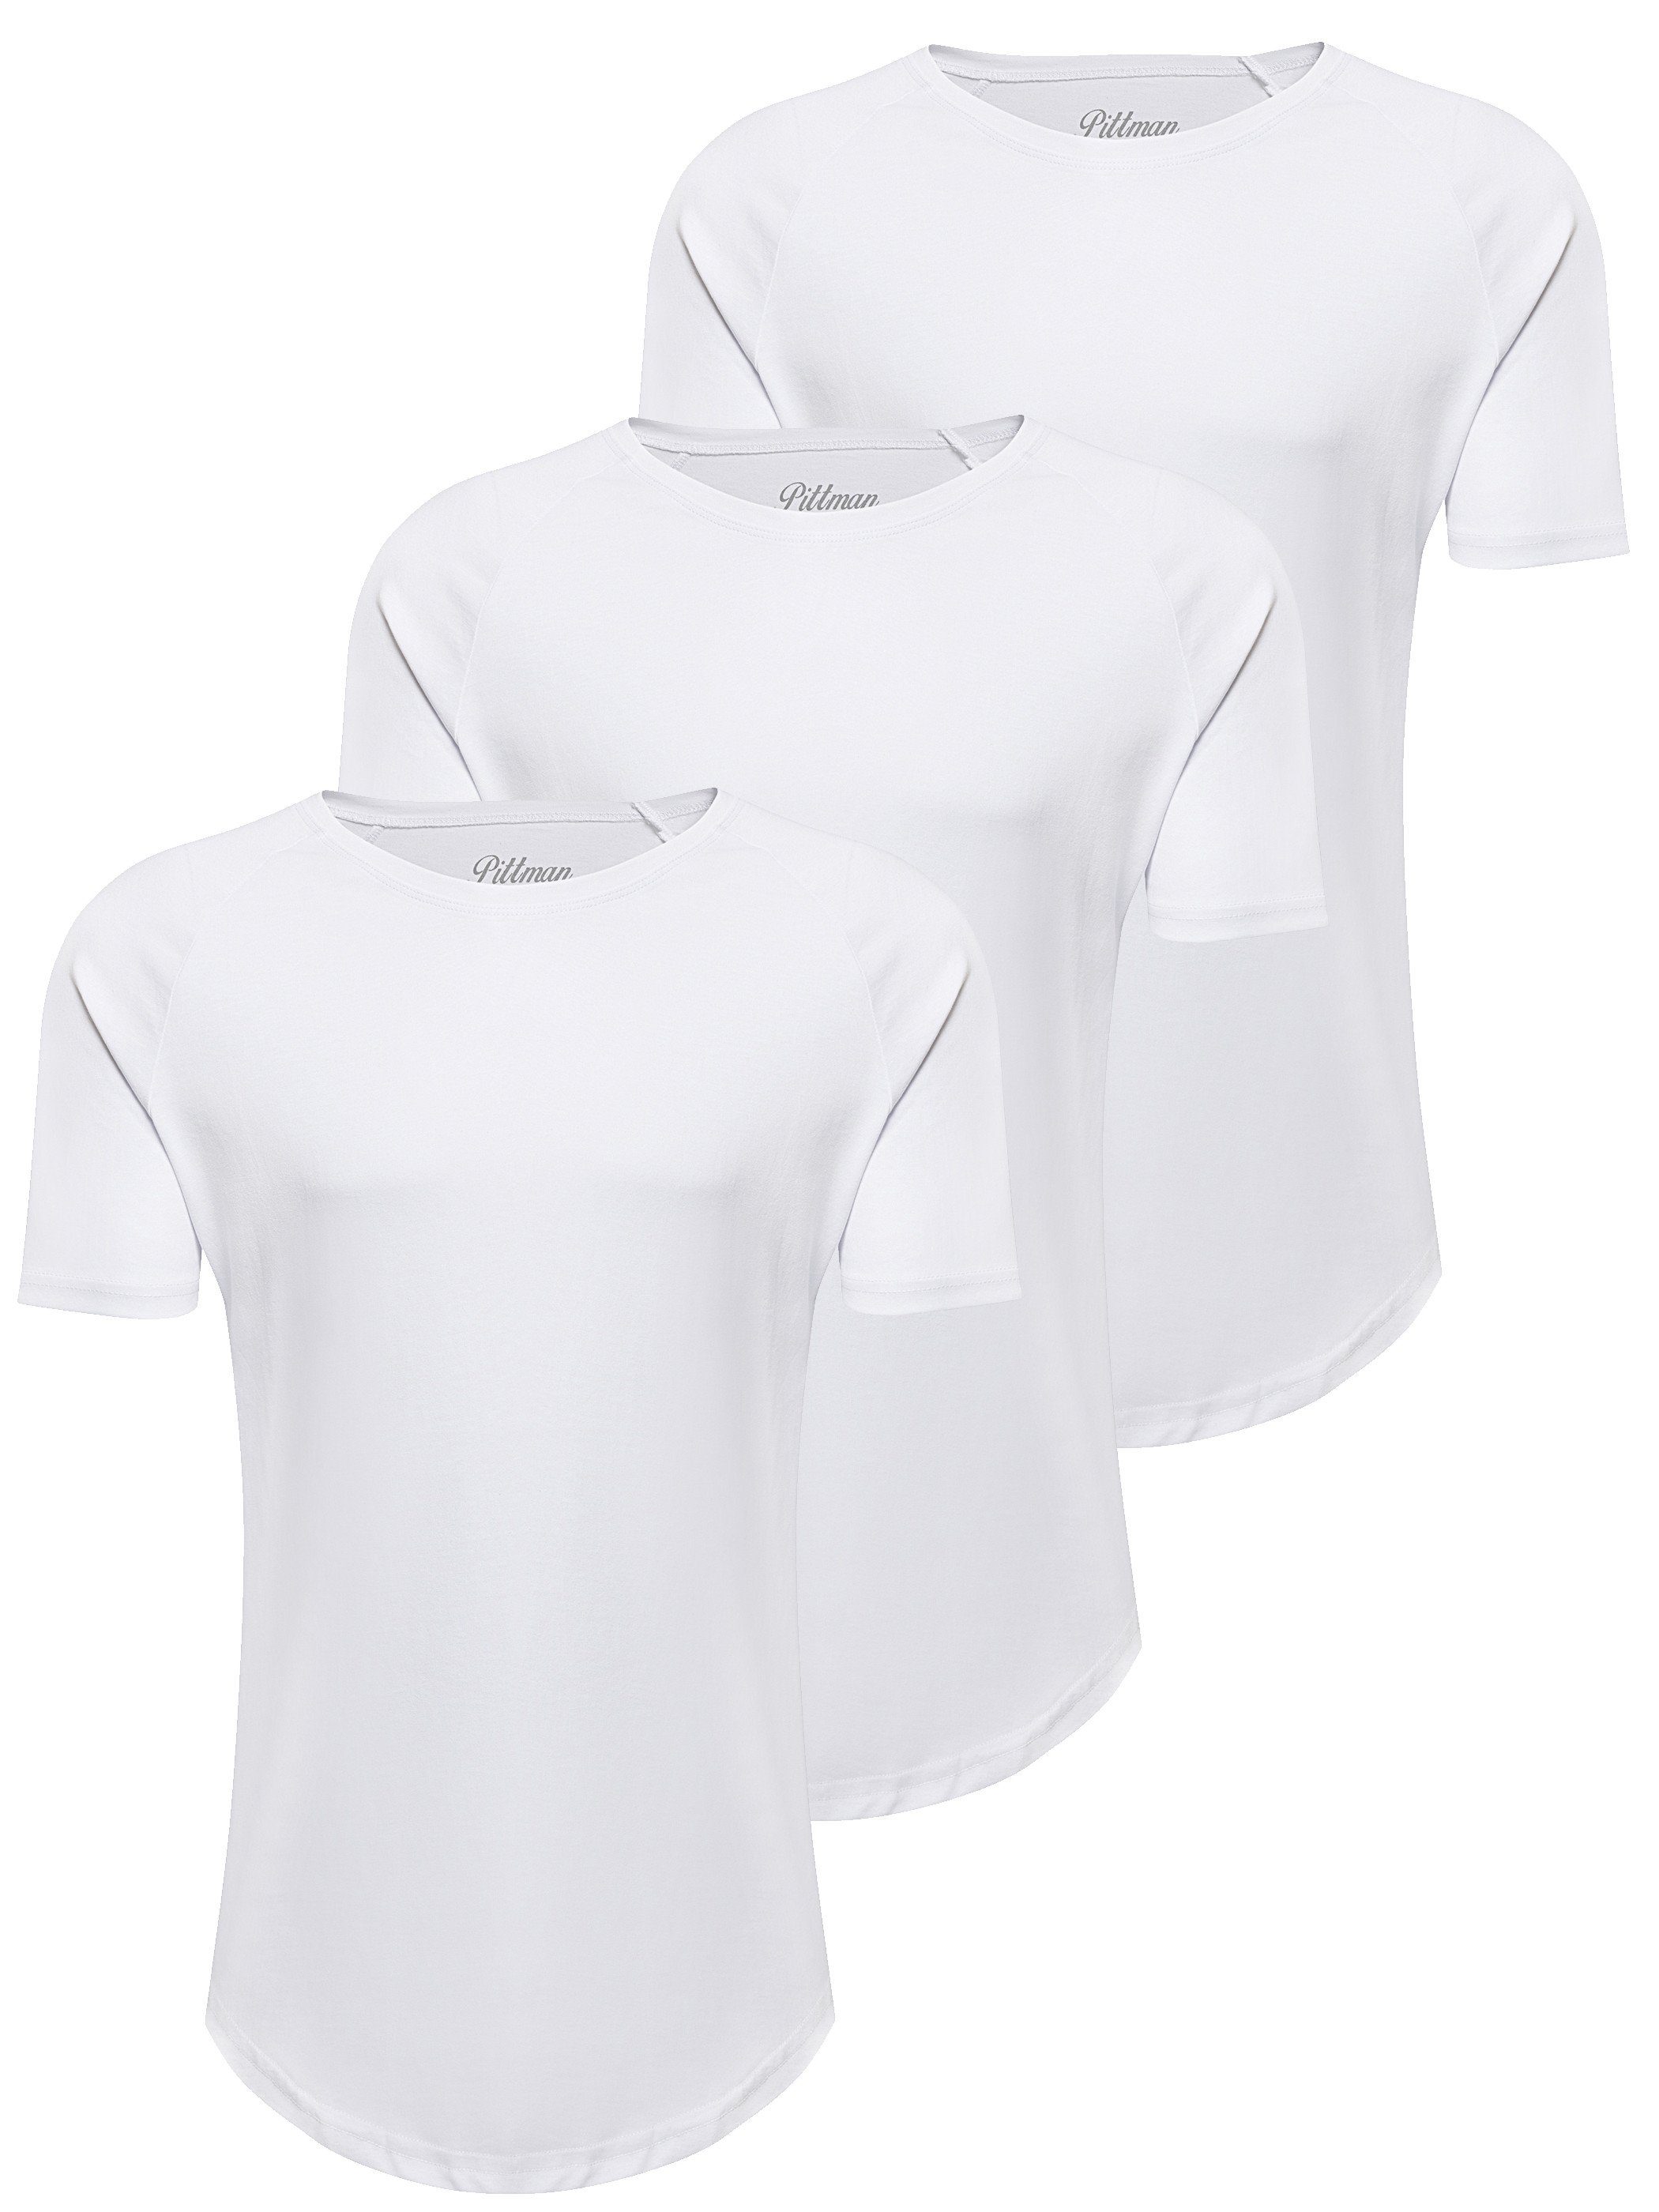 Pittman T-Shirt 3-Pack Herren T-Shirt Finn (Set, 3er-Pack) Oversize Rundhals T-Shirt Weiß (Bright White 1106013)